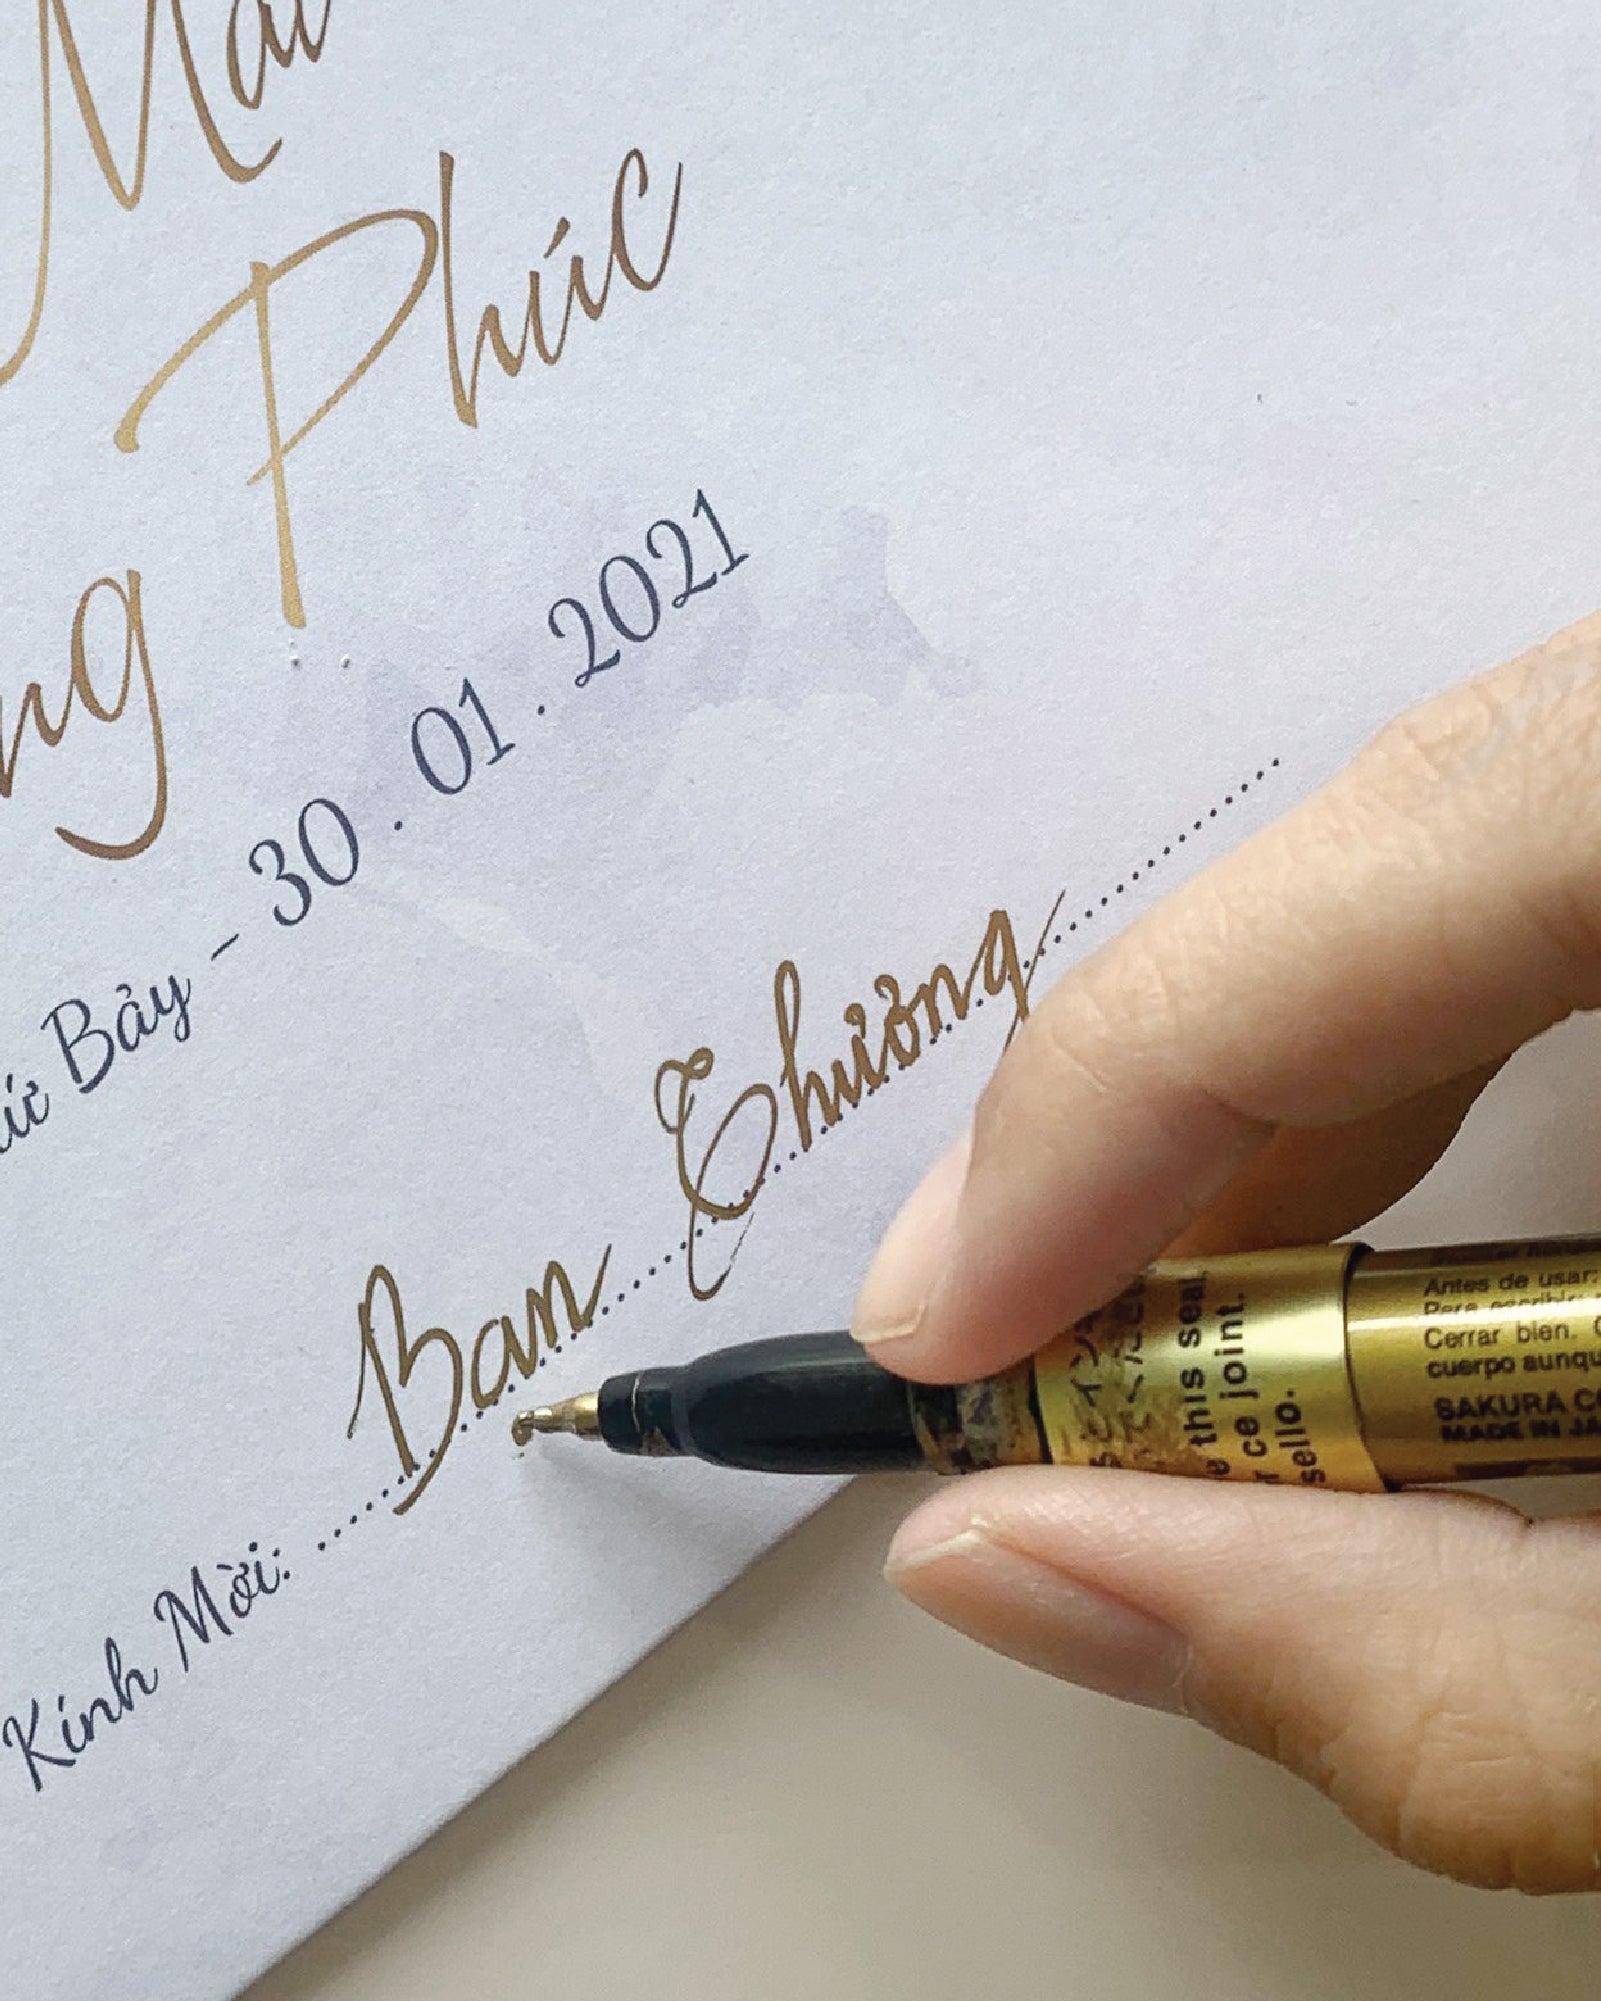 Bút Kim Tuyến được biết đến là một trong những loại bút viết độc đáo và đẹp nhất trên thị trường. Với chất liệu cao cấp và thiết kế sang trọng, bút Kim Tuyến là một lựa chọn hoàn hảo cho việc viết lên những tờ giấy đặc biệt trong ngày cưới của bạn. Hãy để hình ảnh kinh ngạc của bút Kim Tuyến khiến bạn hài lòng và hào hứng!